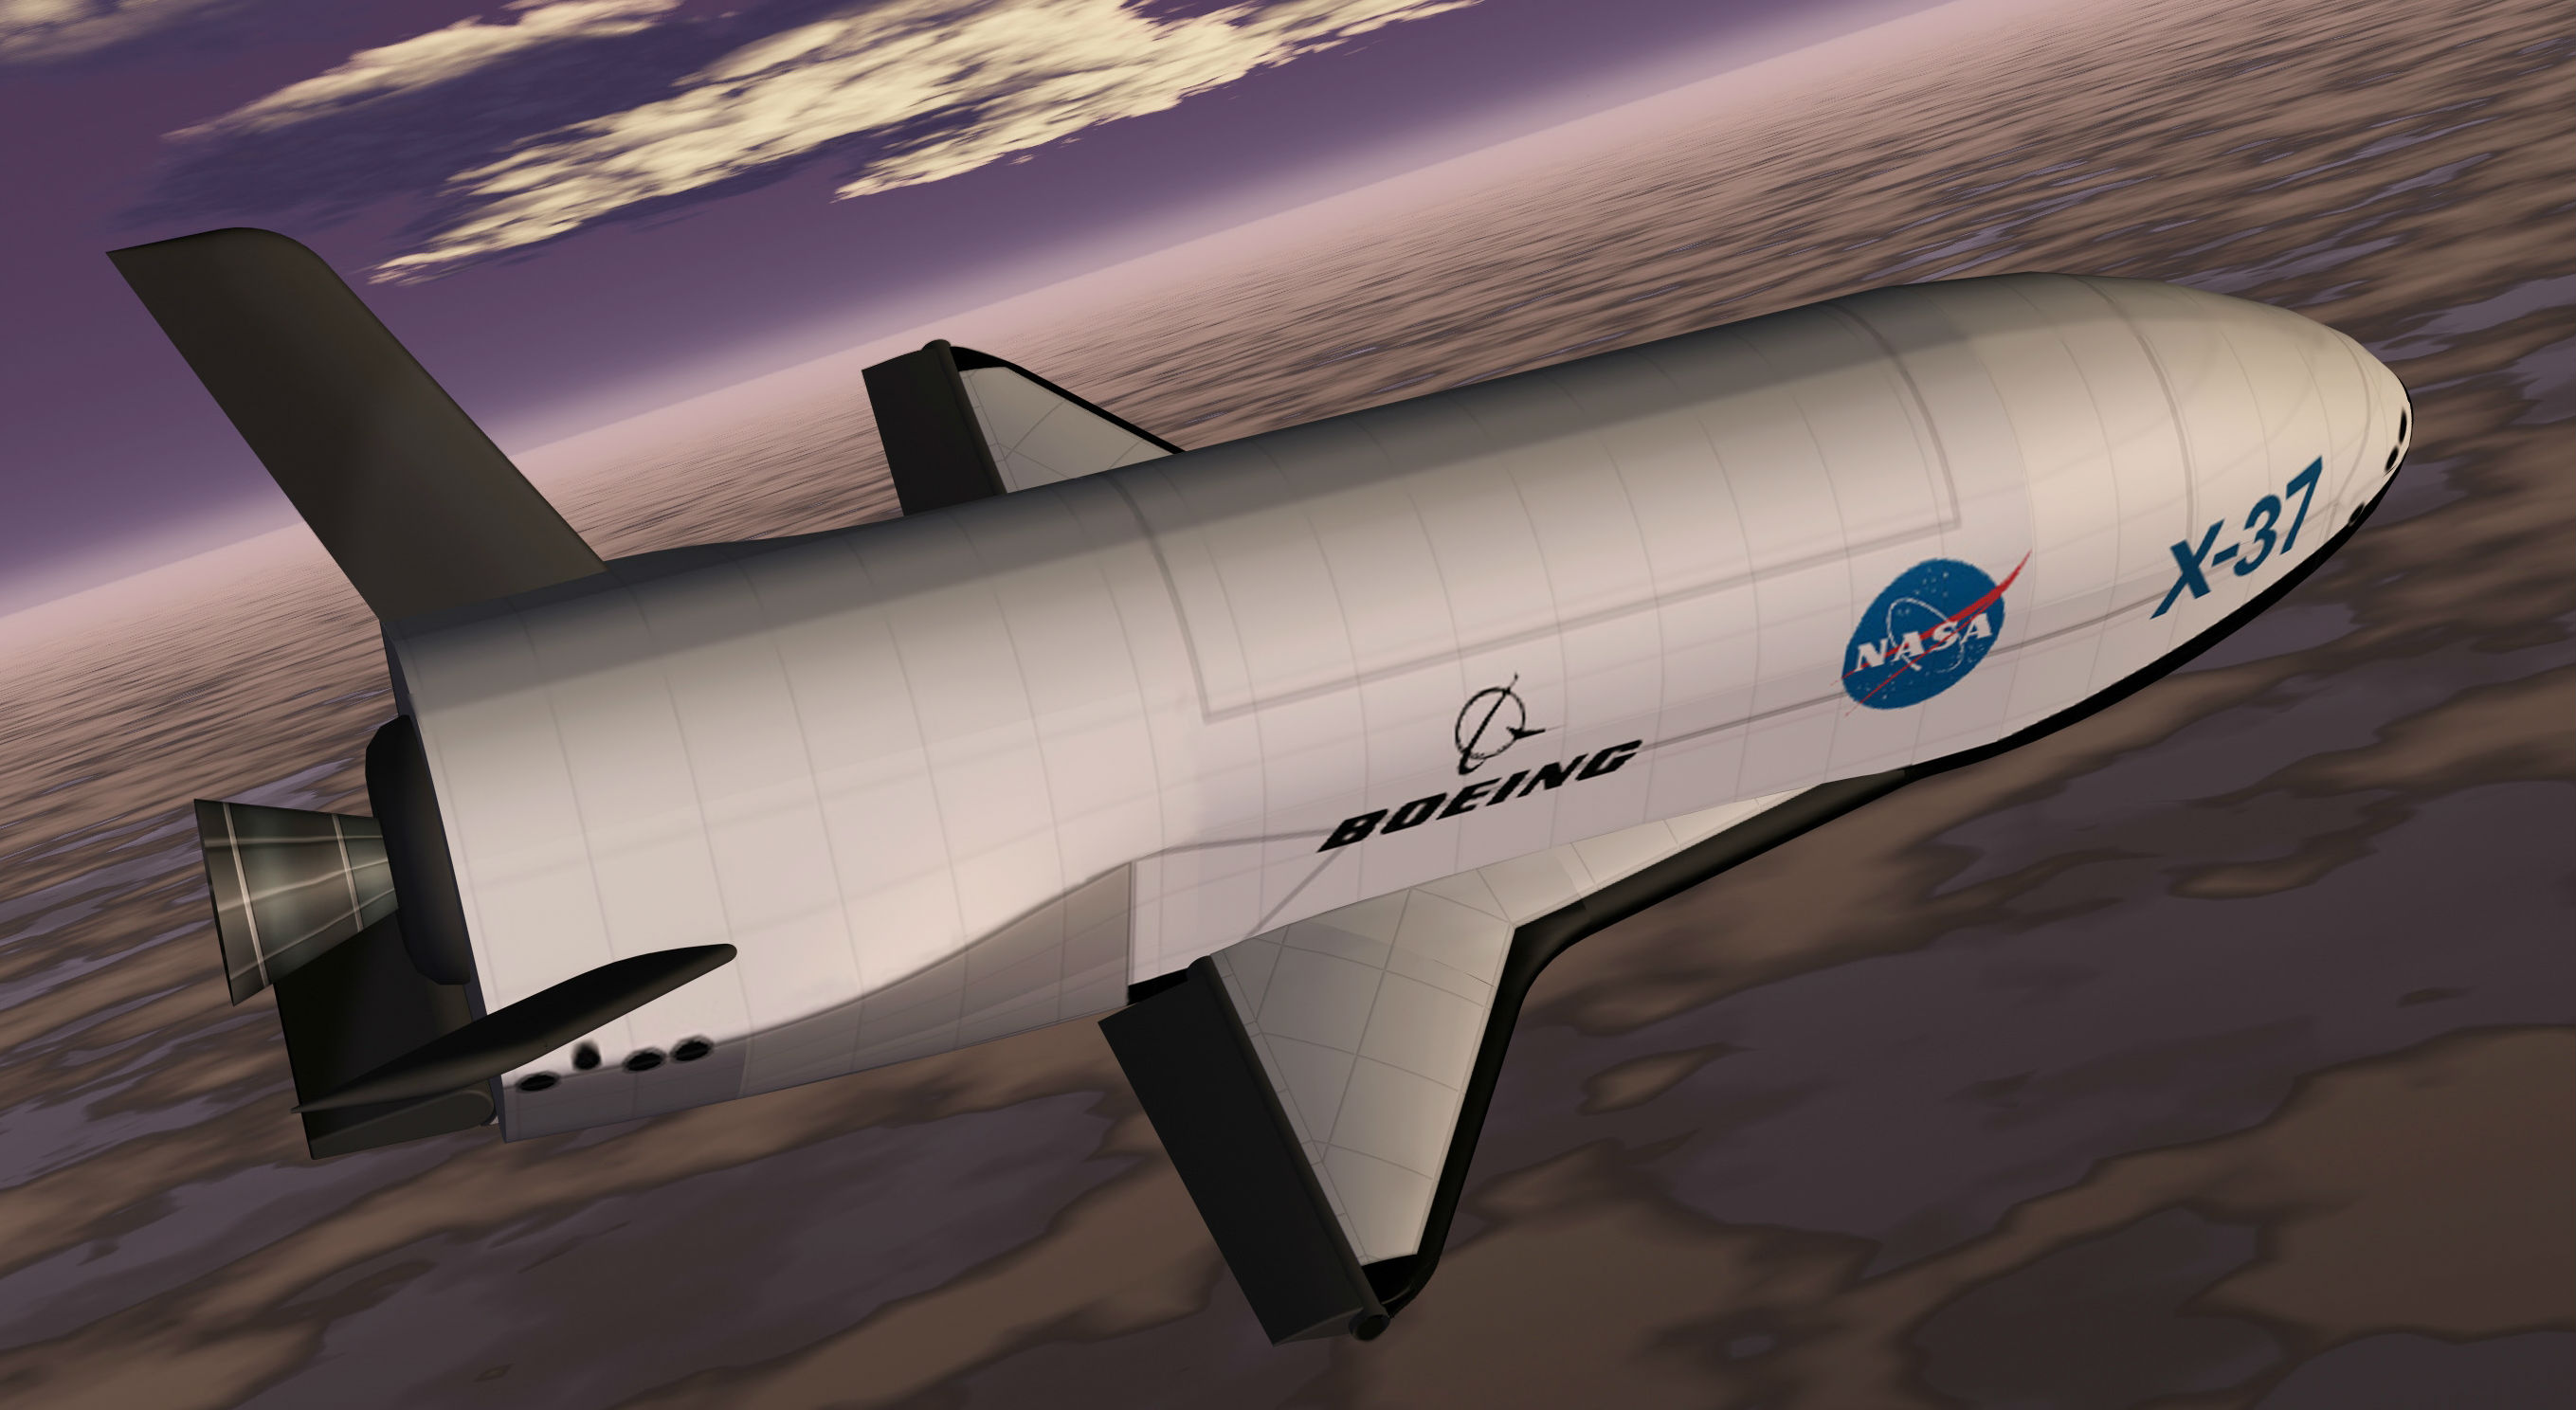 Ноу-хау космического центра и корпорации Boeing: многоразовый самолет-разведчик Boeing X-37 превратится в боевое космическое такси